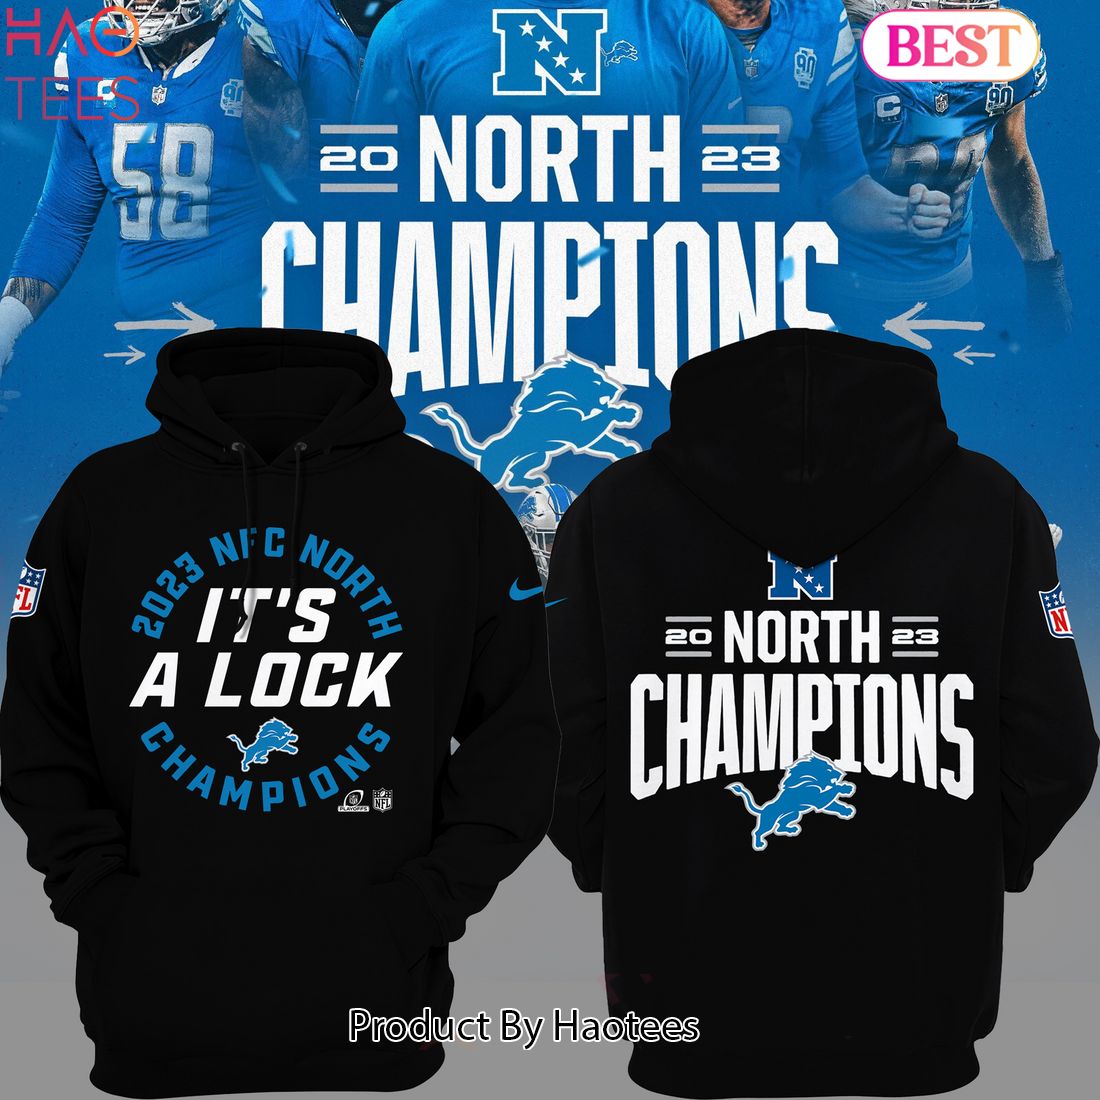 Detroit Lions NFC North Champions Hoodies, Detroit Lions